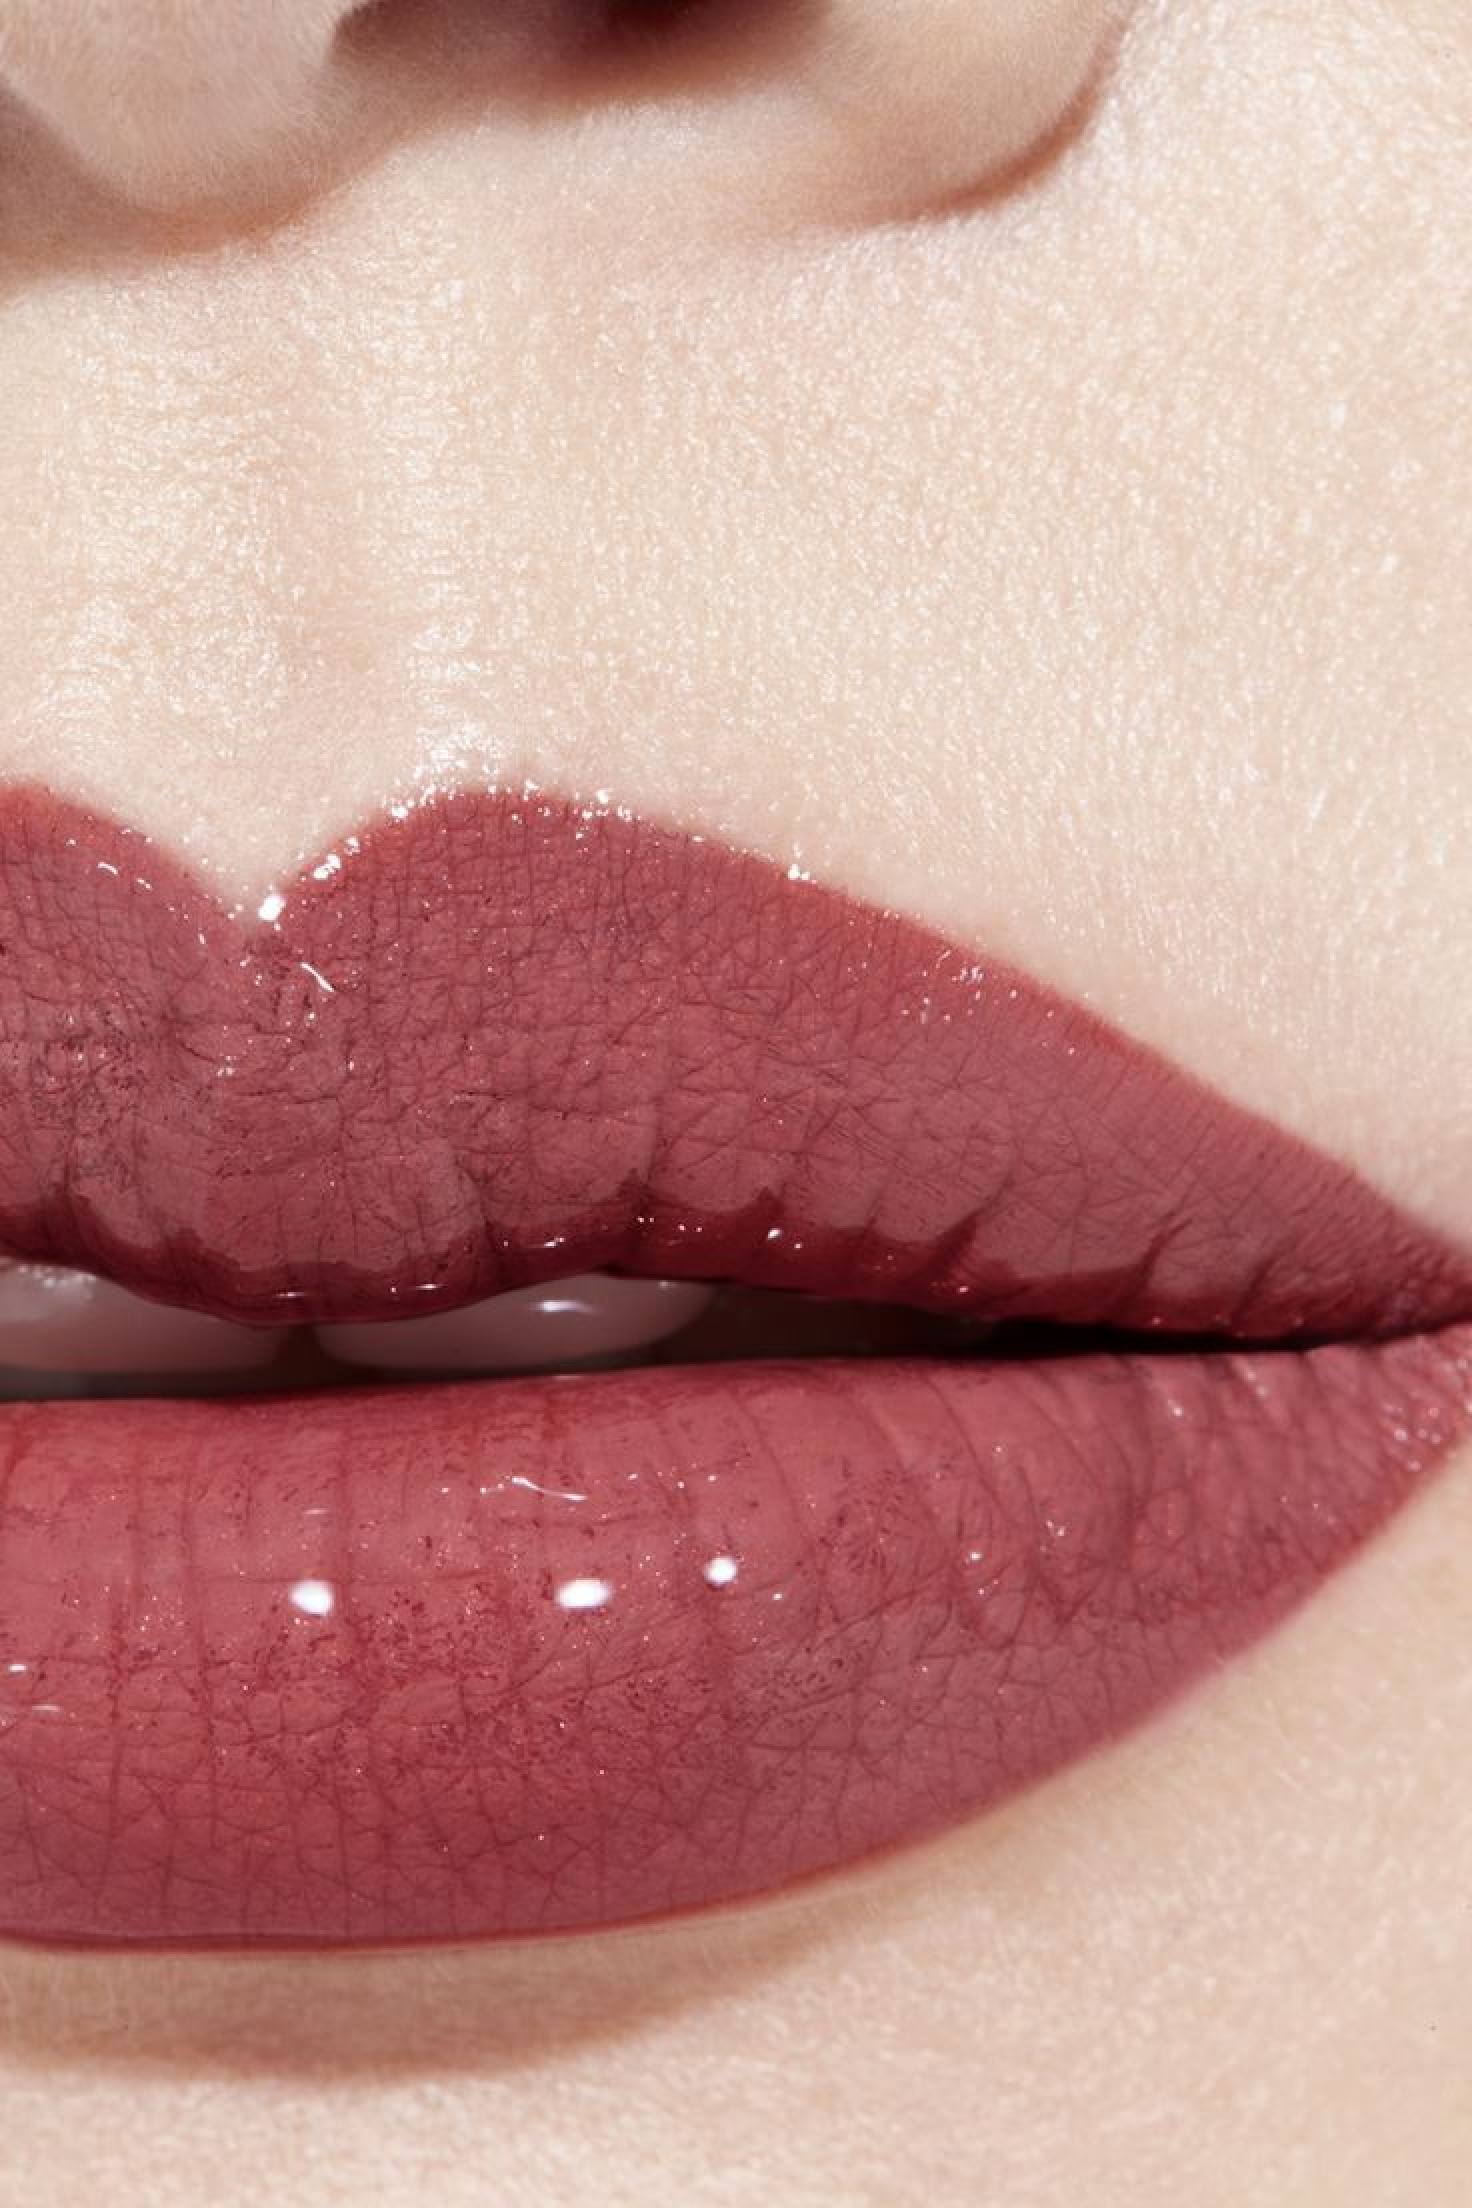 The 17 Best Chanel Lipsticks, Chosen By a Makeup Artist